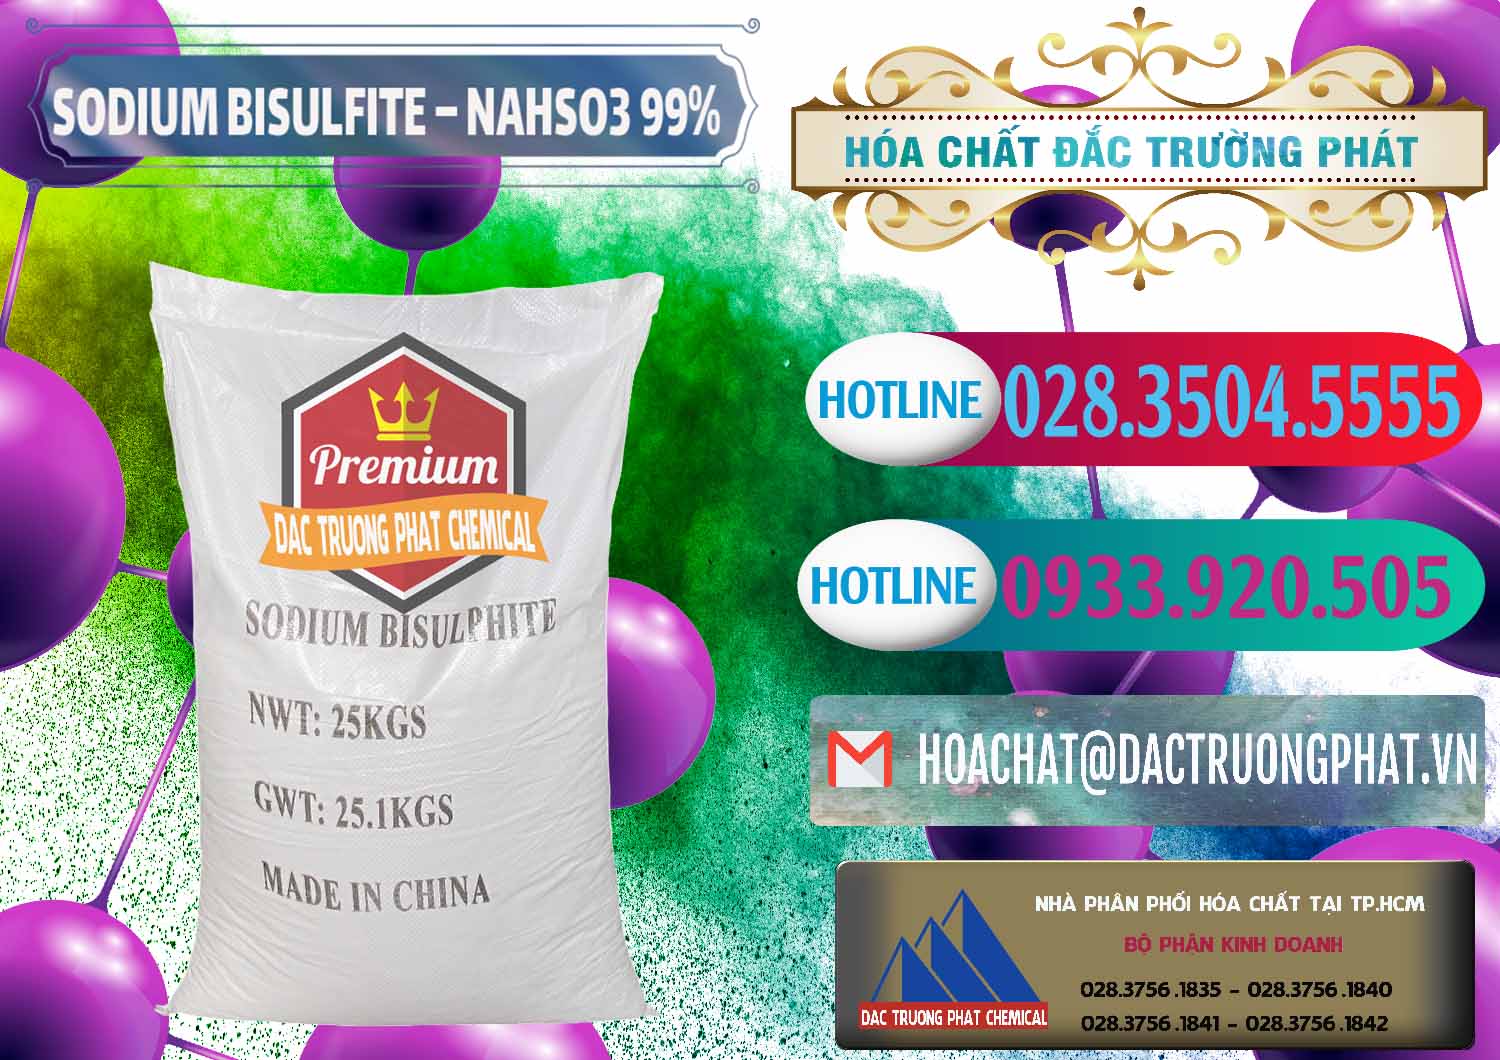 Nơi chuyên bán - cung cấp Sodium Bisulfite – NAHSO3 Trung Quốc China - 0140 - Cty chuyên phân phối - bán hóa chất tại TP.HCM - truongphat.vn